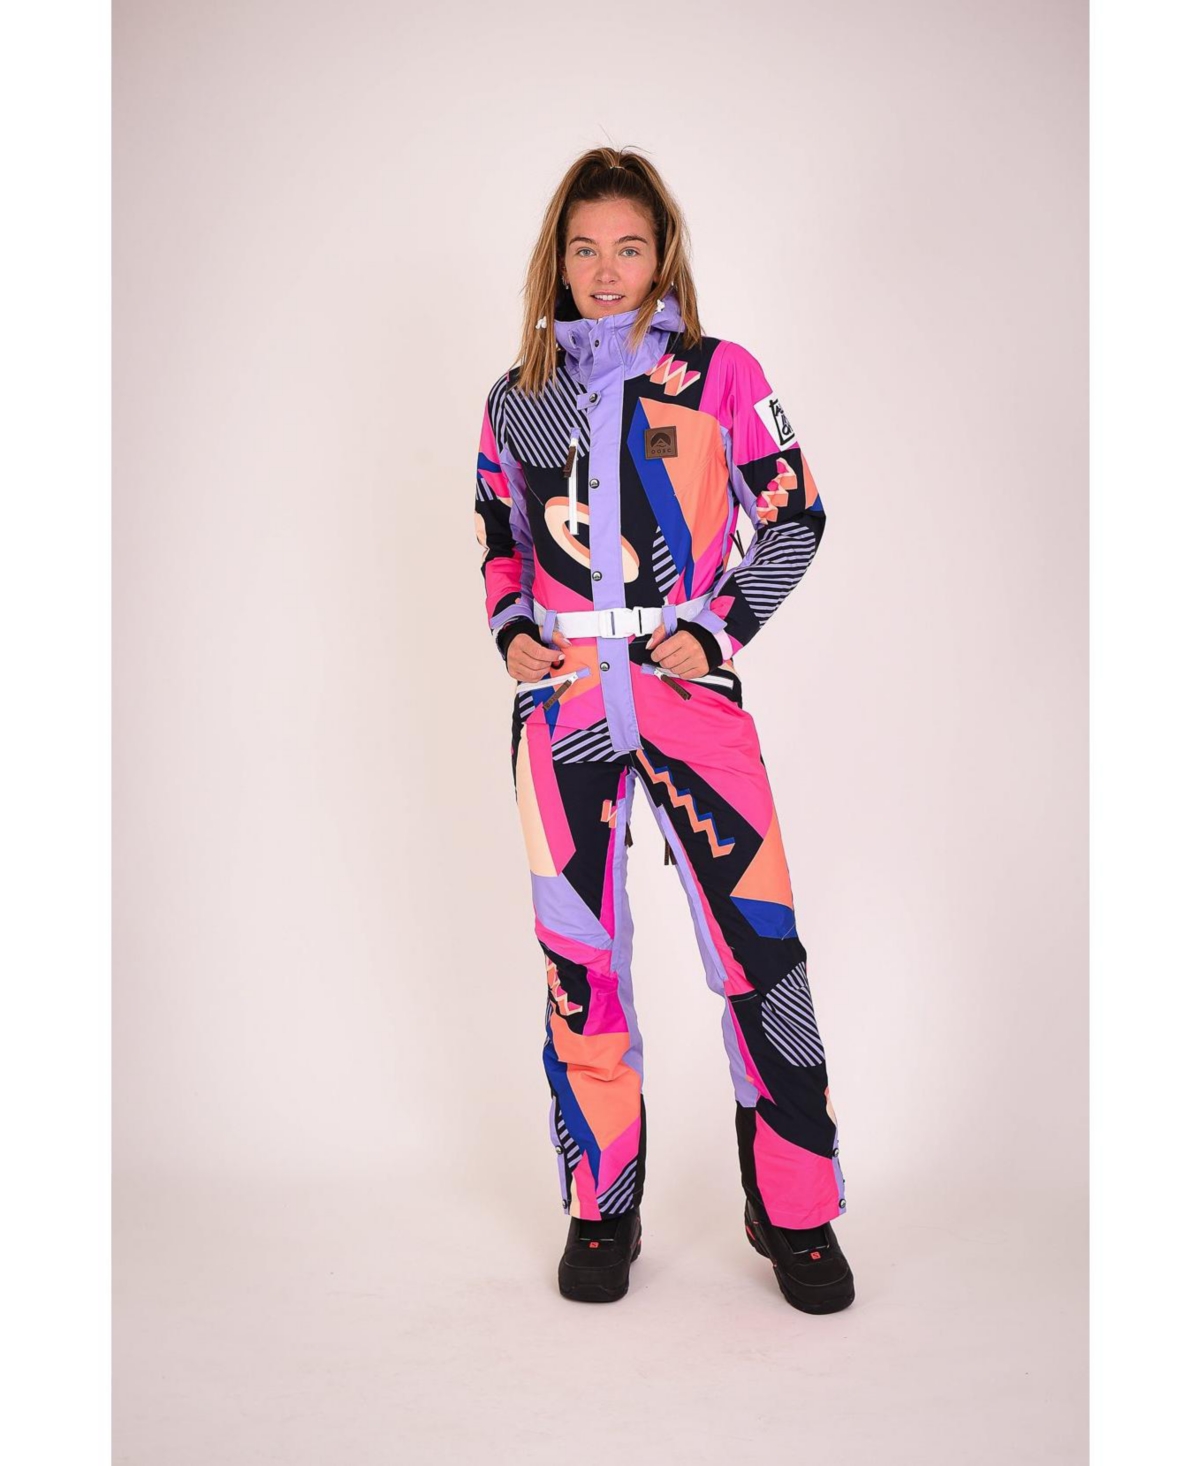 Hotstepper Women's Ski Suit - Multi